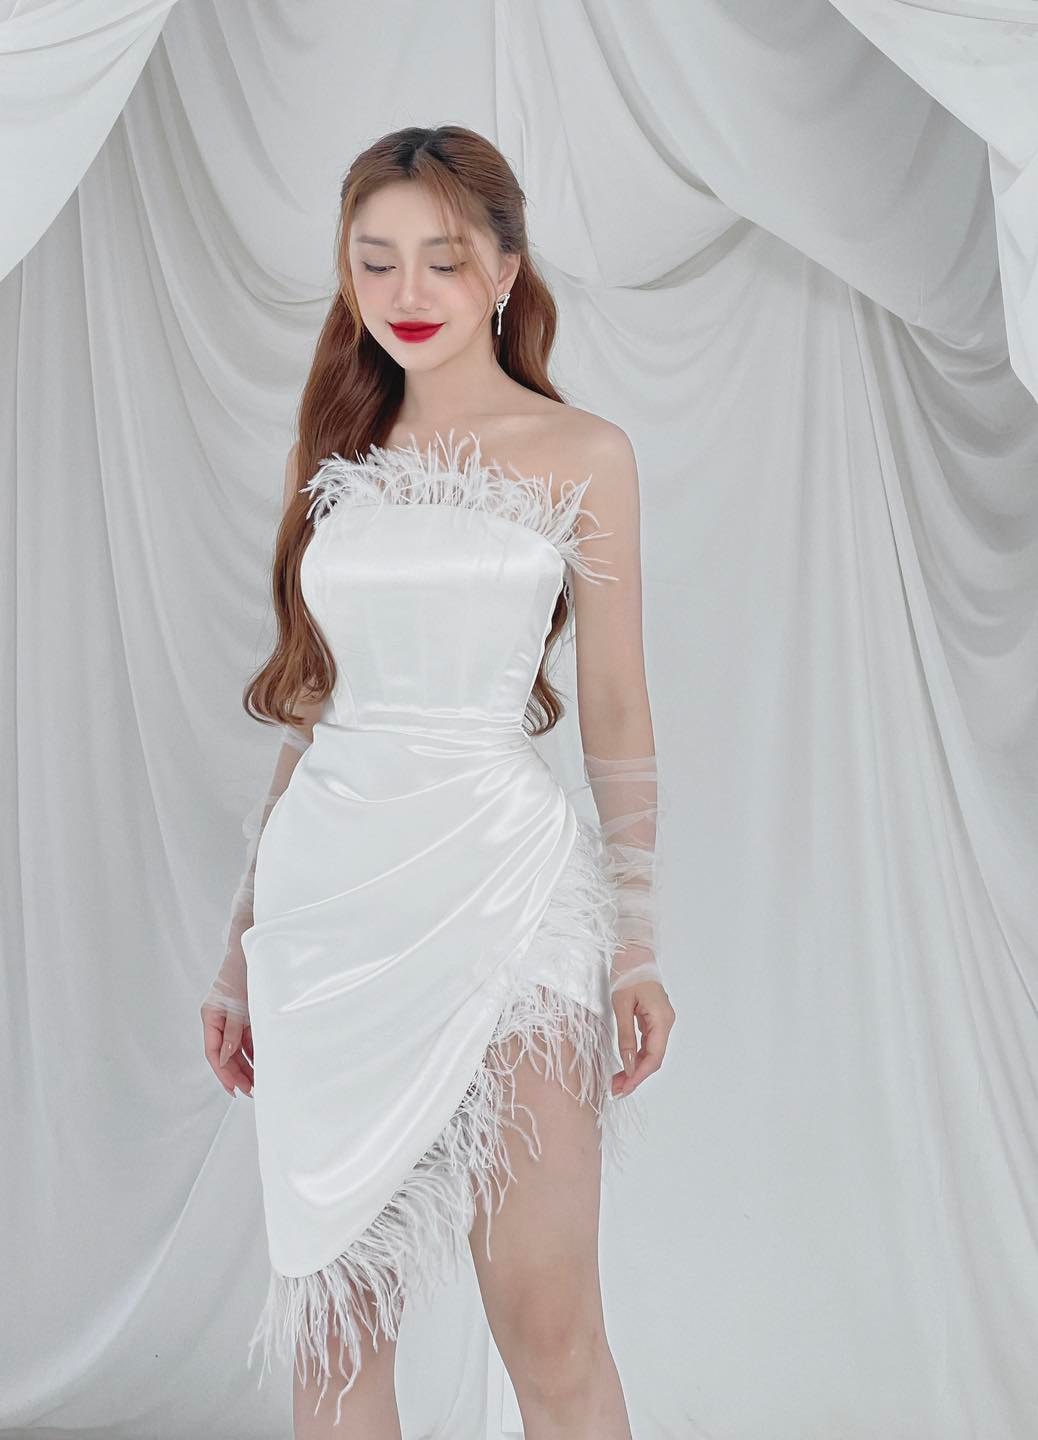 Tuyển chọn 999 mẫu váy quây body được yêu thích nhất!